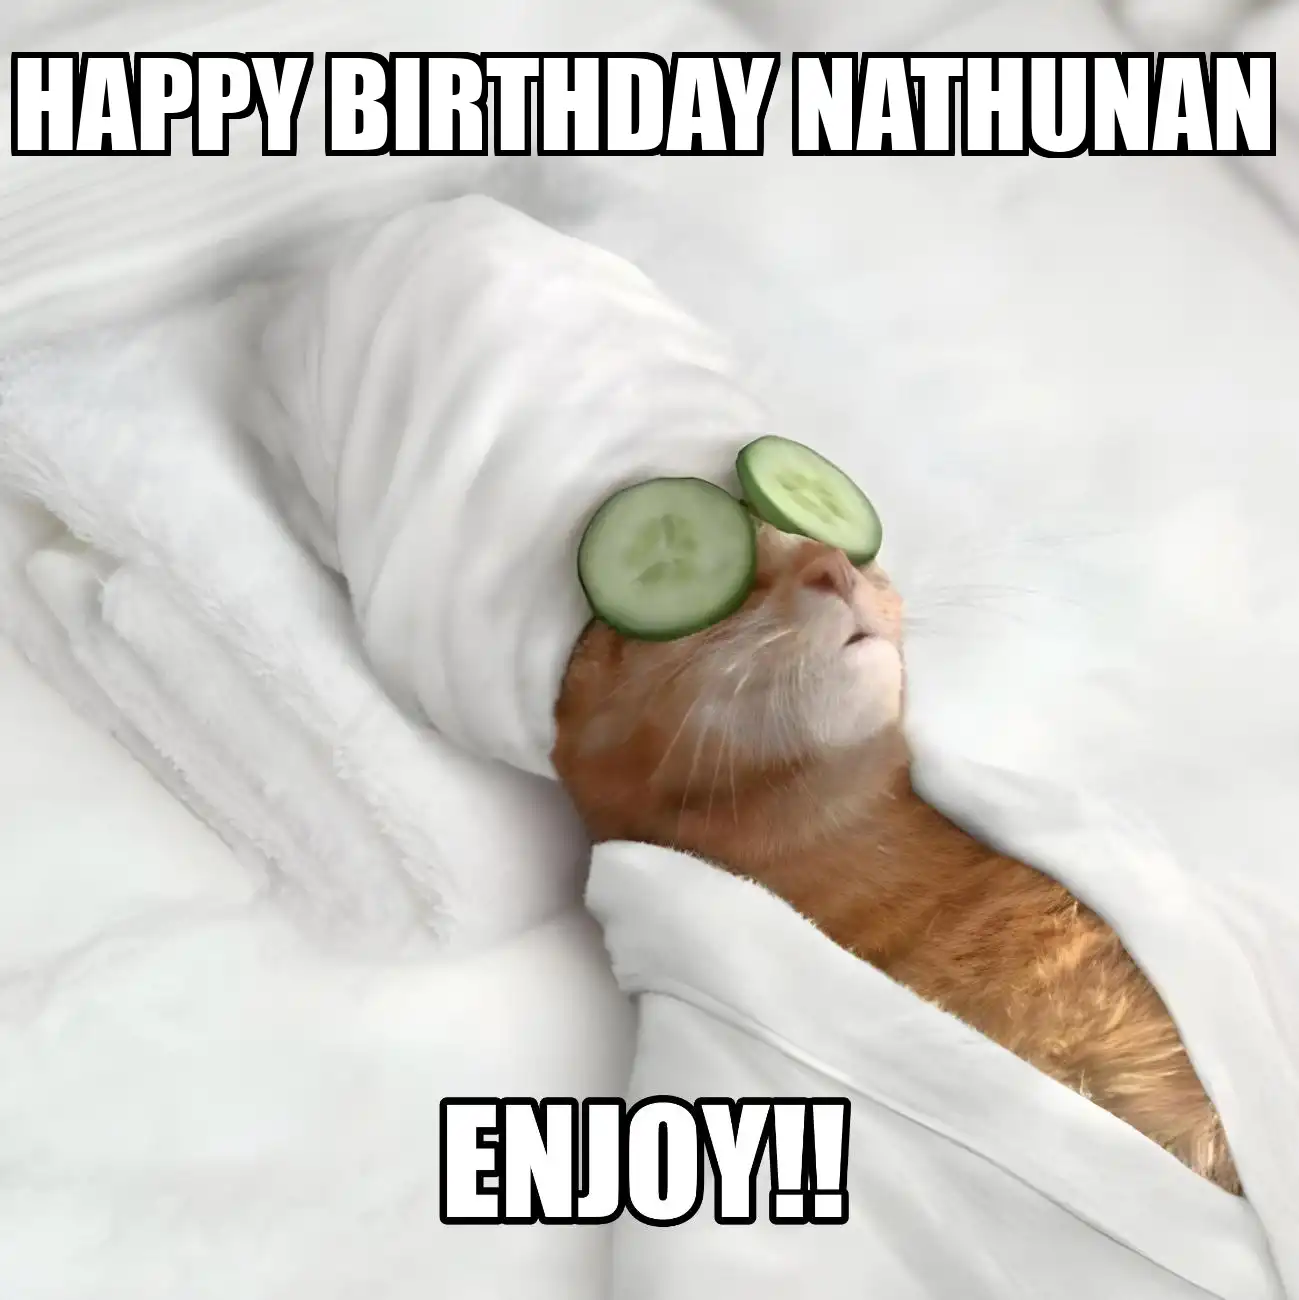 Happy Birthday Nathunan Enjoy Cat Meme